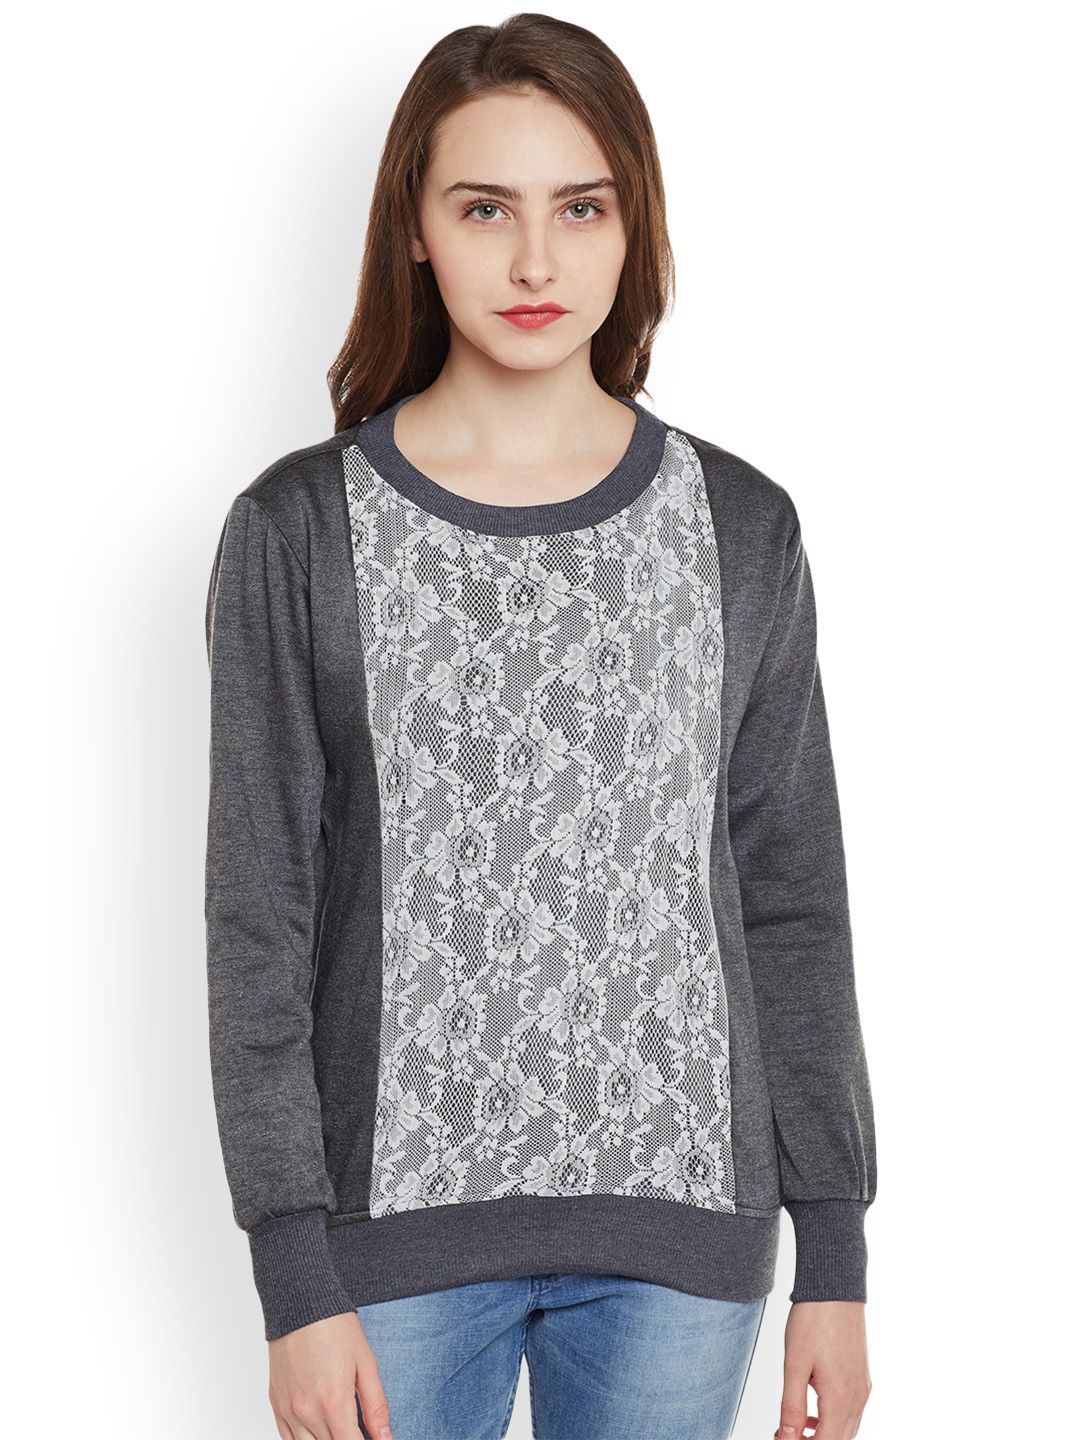 Belle Fille Women Grey Solid Sweatshirt Price in India